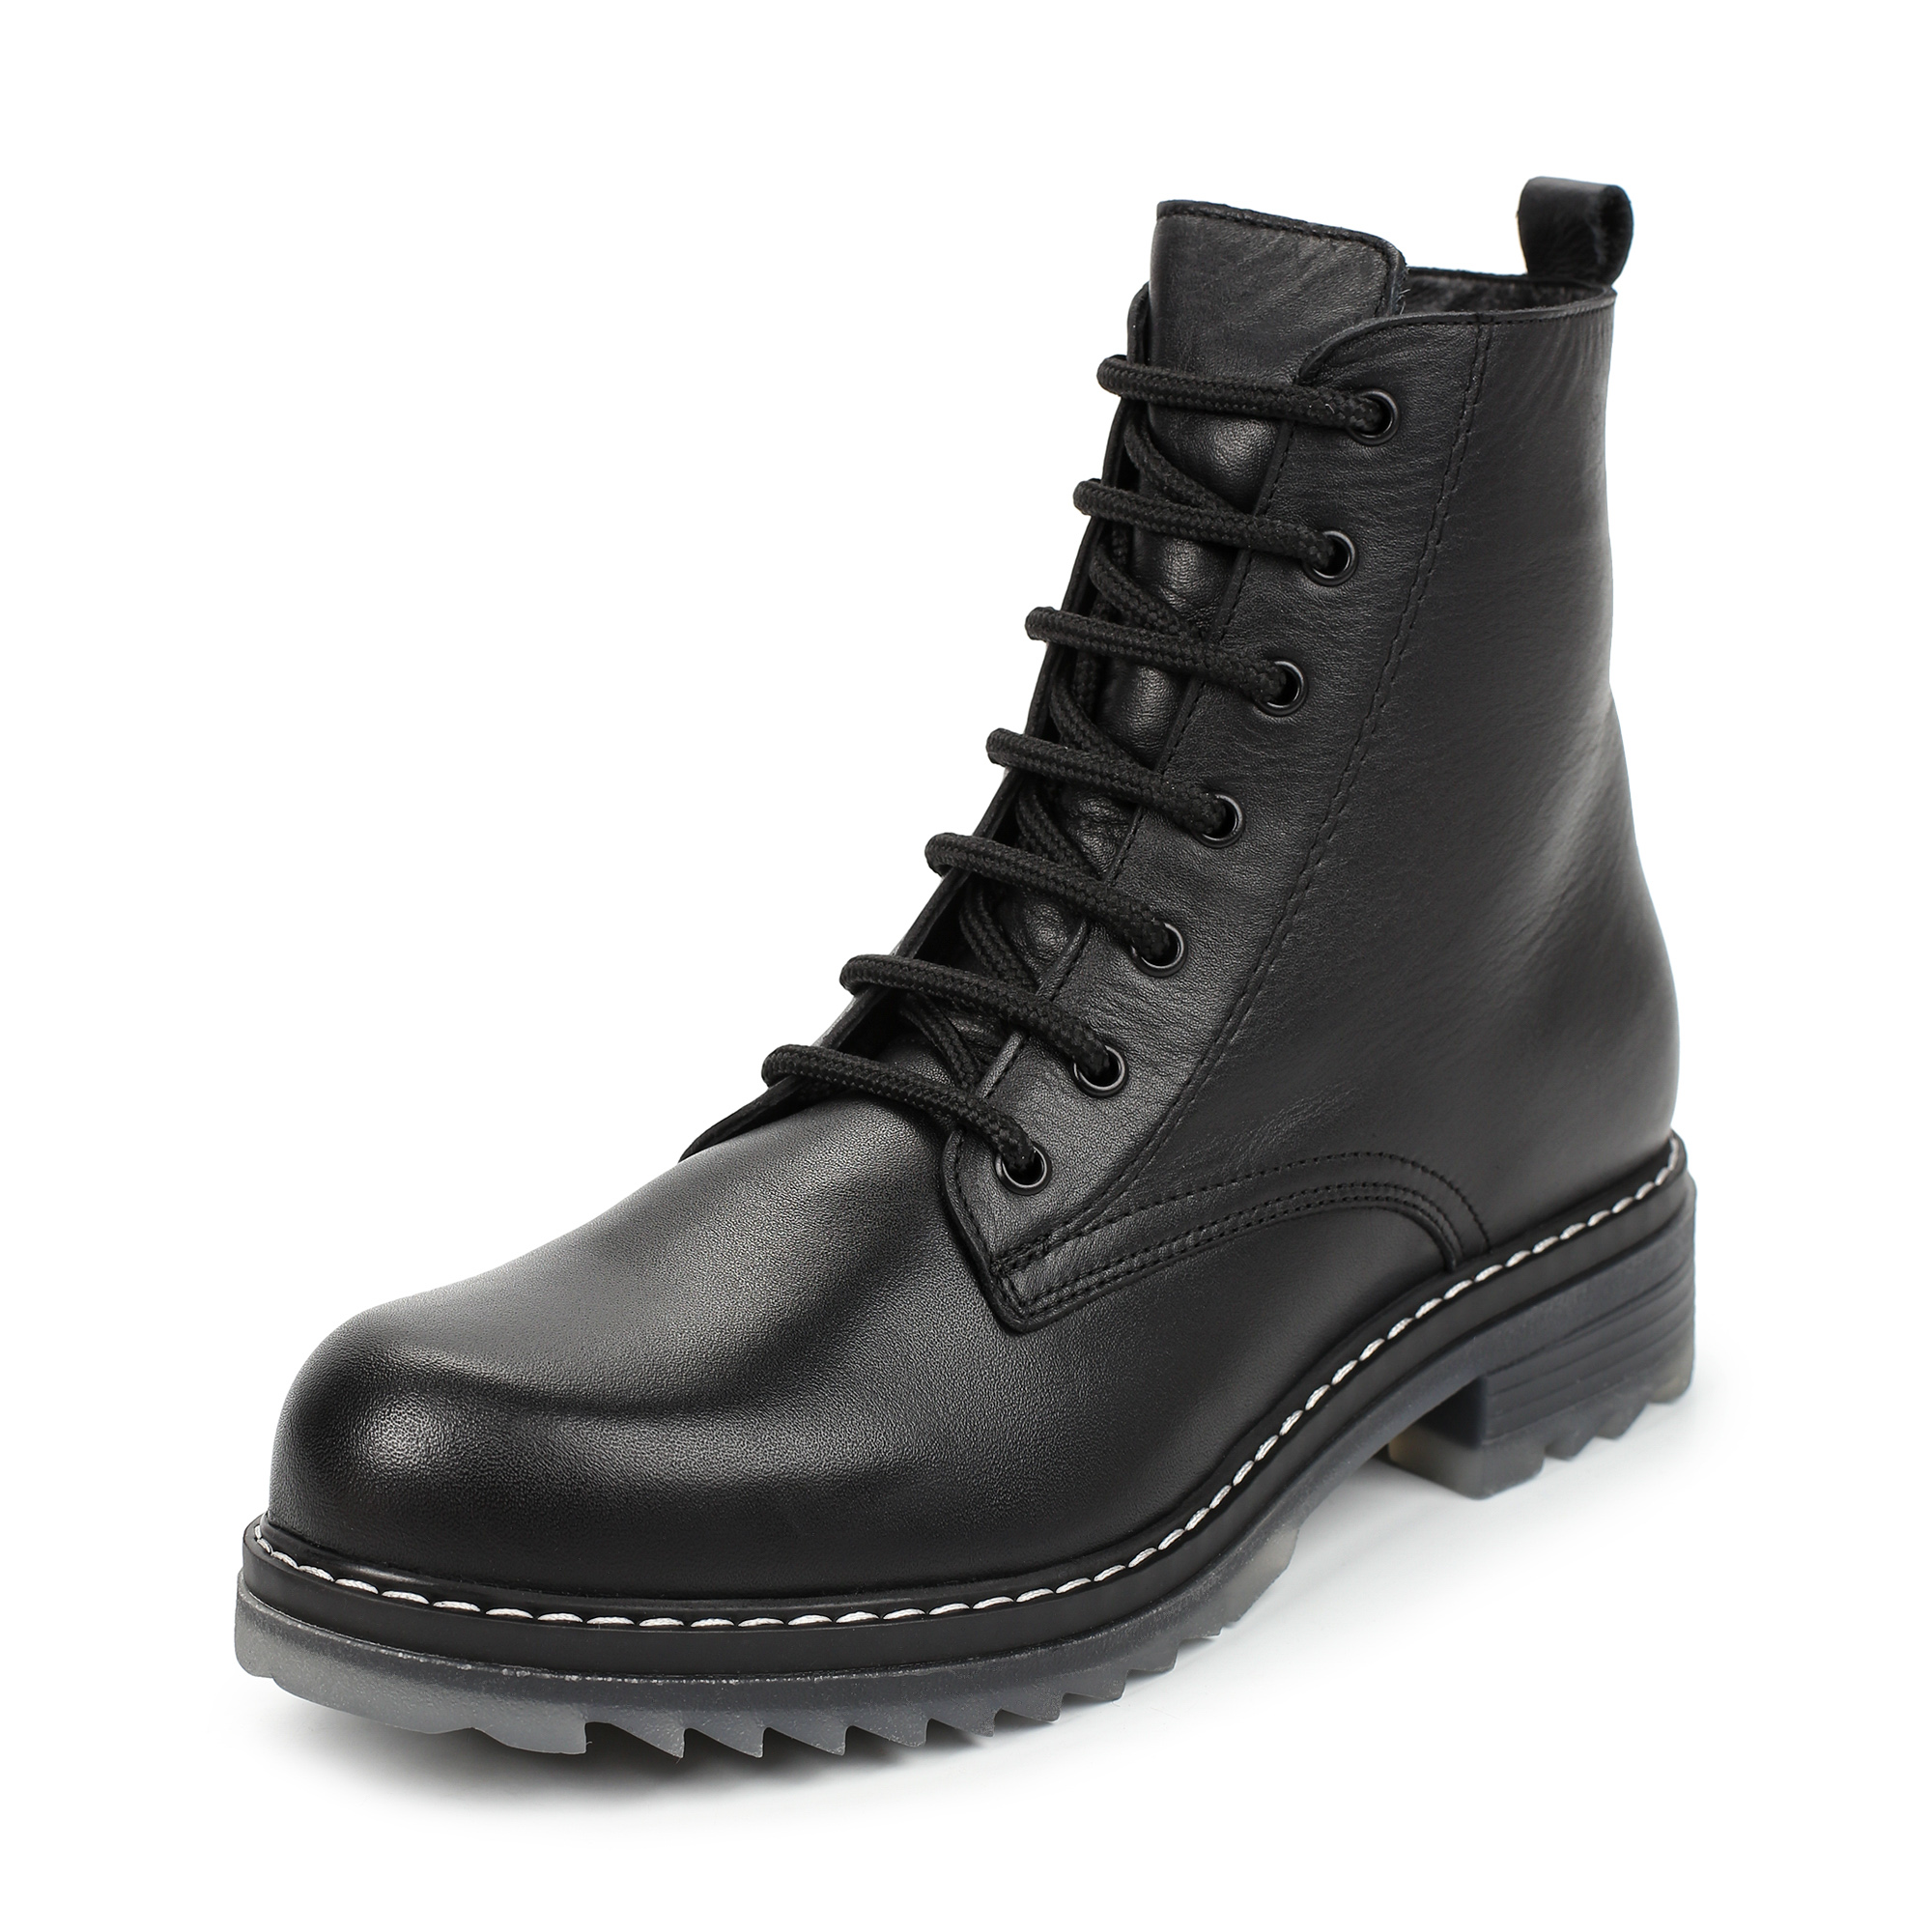 Ботинки Thomas Munz 506-005A-2102, цвет черный, размер 38 - фото 2